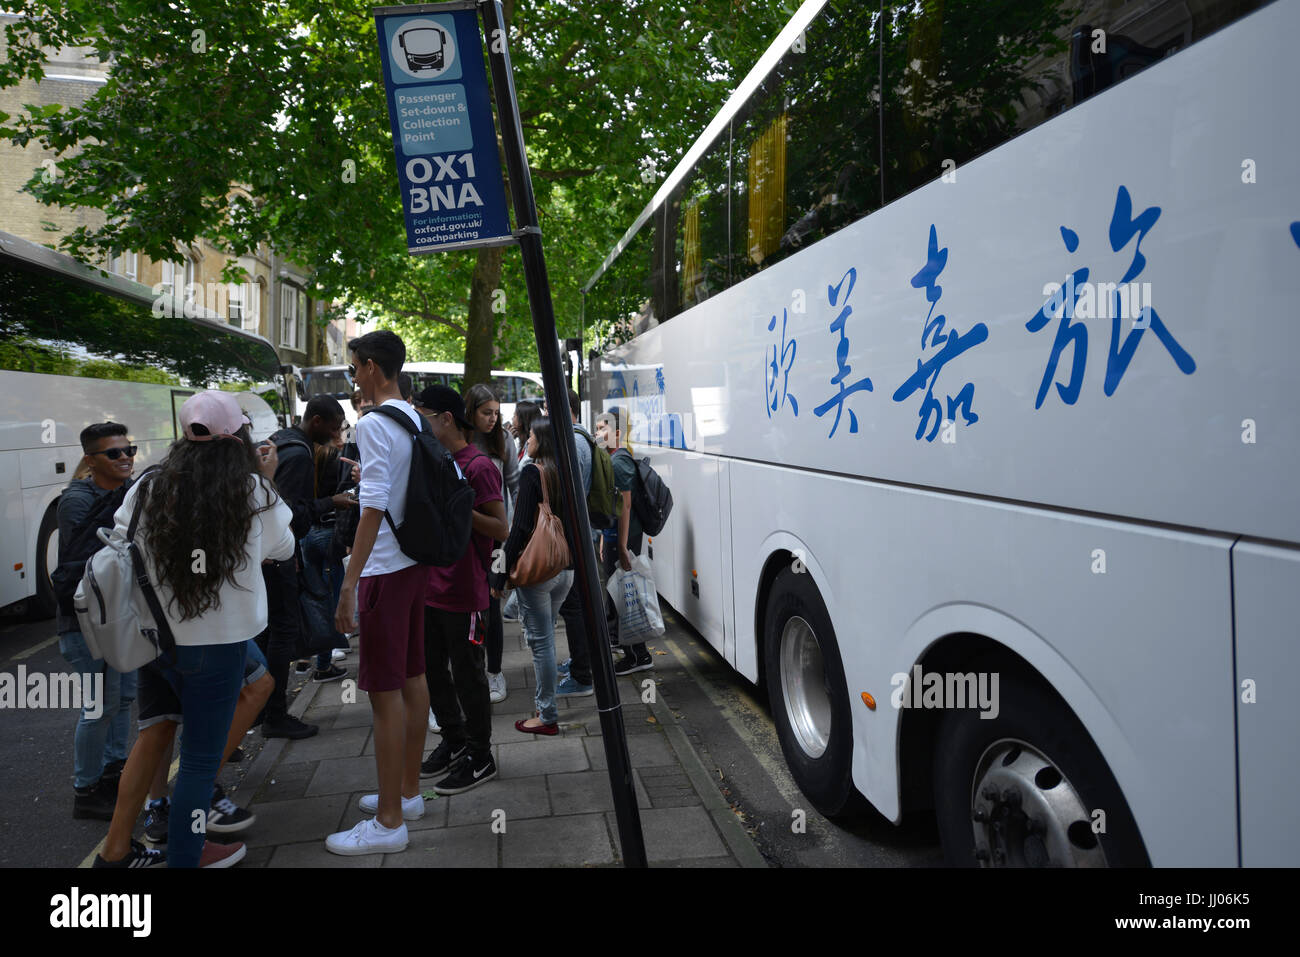 Touristenbus mit chinesischen Schriftzügen und Logos Einlagen Passagiere in Oxford Stockfoto